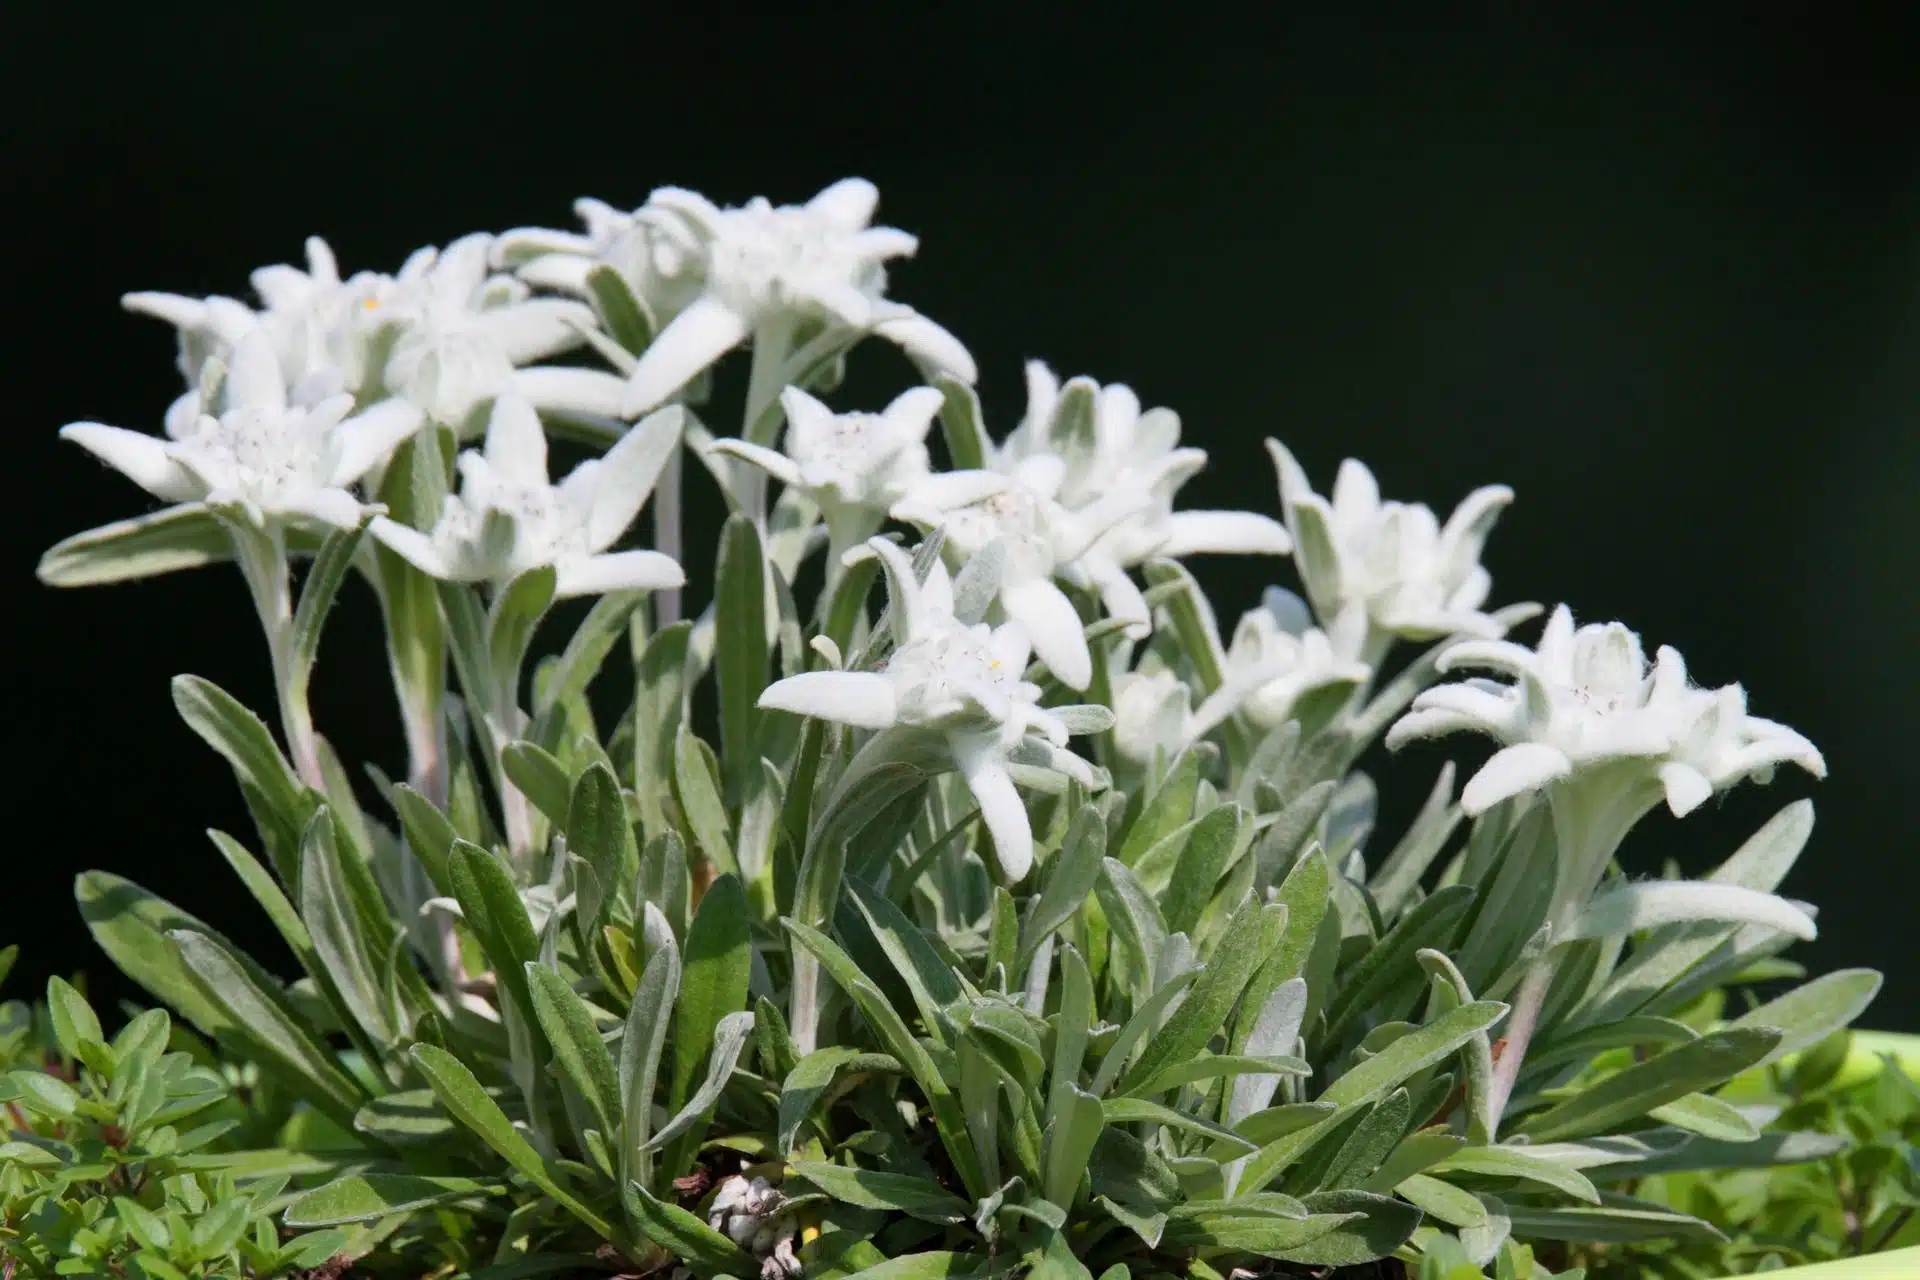 edelweiss sur fond noir - Image par Nutze die Bilder respektvoll! Use my pictures respectfully! de https://pixabay.com/fr/photos/edelweiss-alpes-fleur-alpine-3424452/